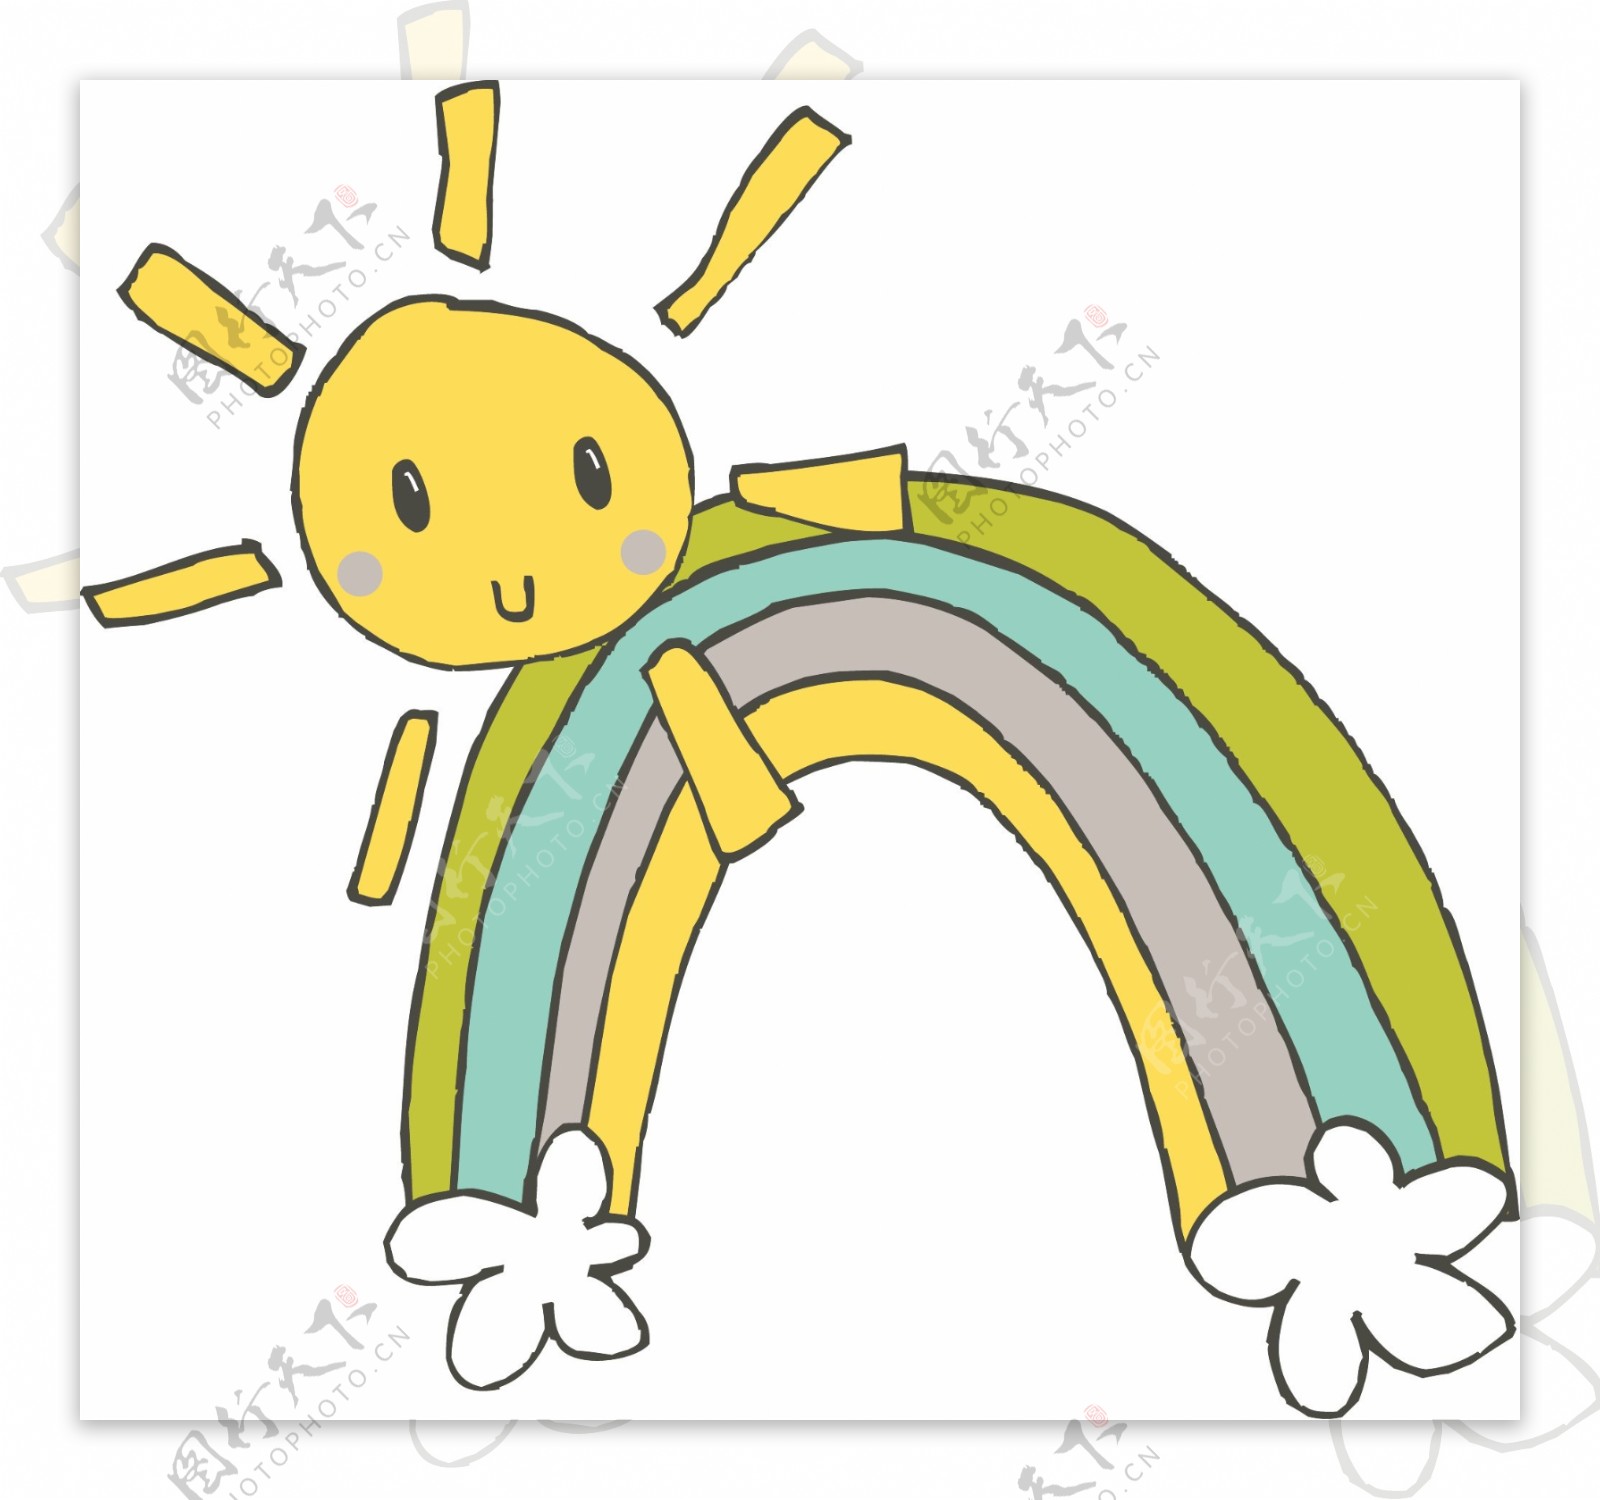 印花矢量图太阳彩虹桥色彩免费素材